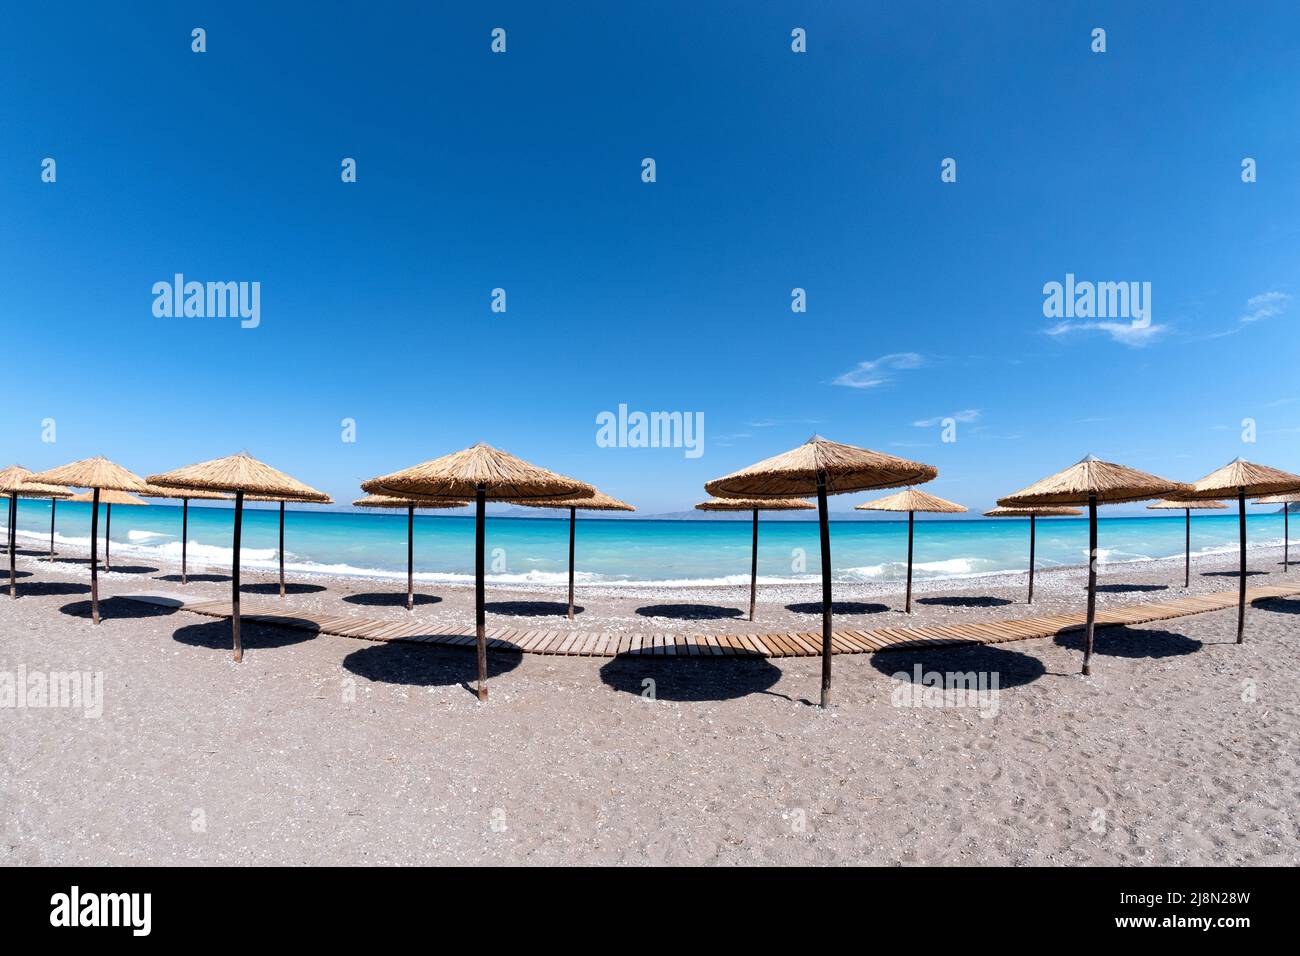 Una hilera de sombrillas de palma o sombrillas de playa de paja bordeadas de gradas filas en una playa de arena vacía con un mar turquesa como telón de fondo y un cielo azul Foto de stock